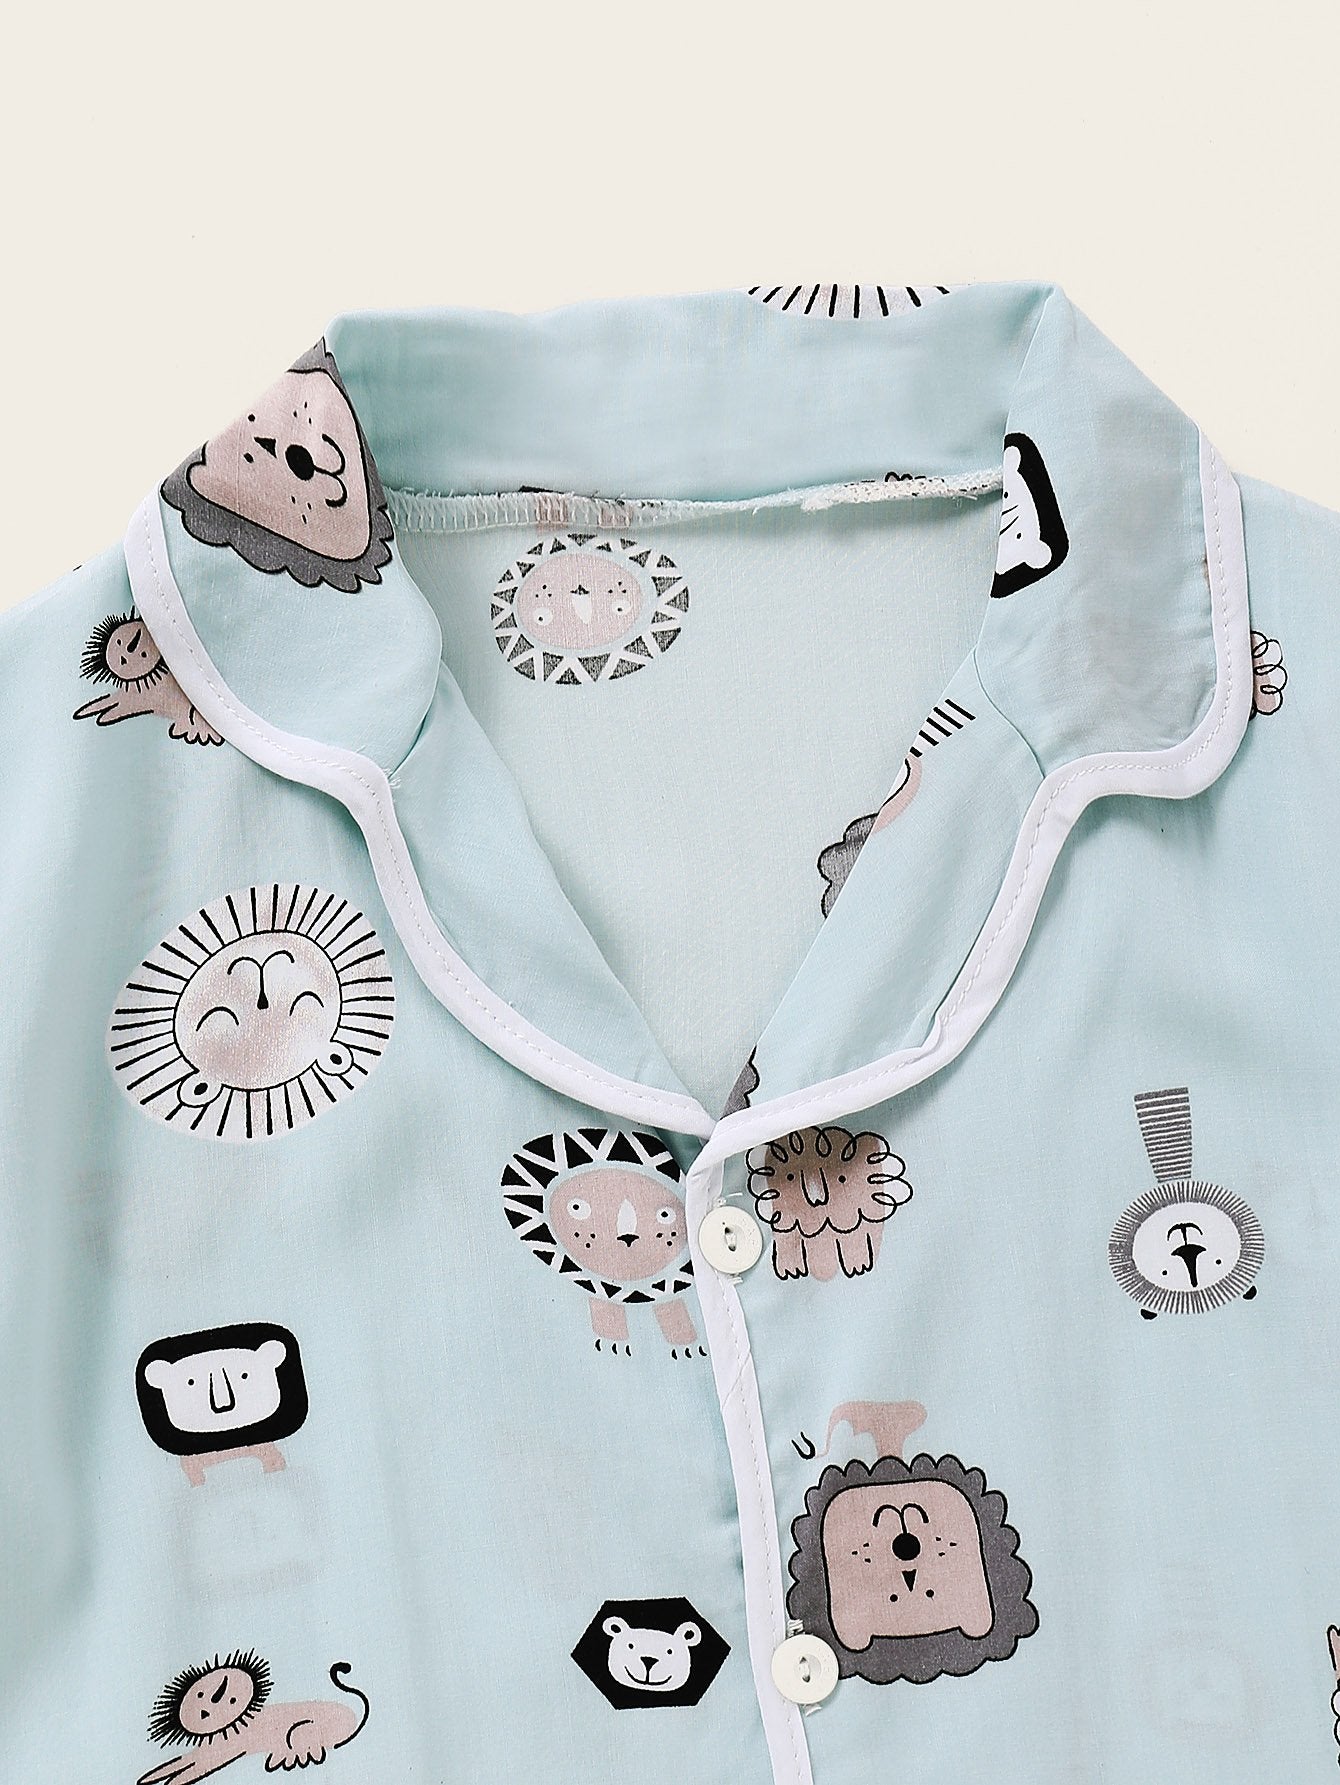 Unisex Pajamas Cartoon Printed Top & Pants Wholesale Kidswear